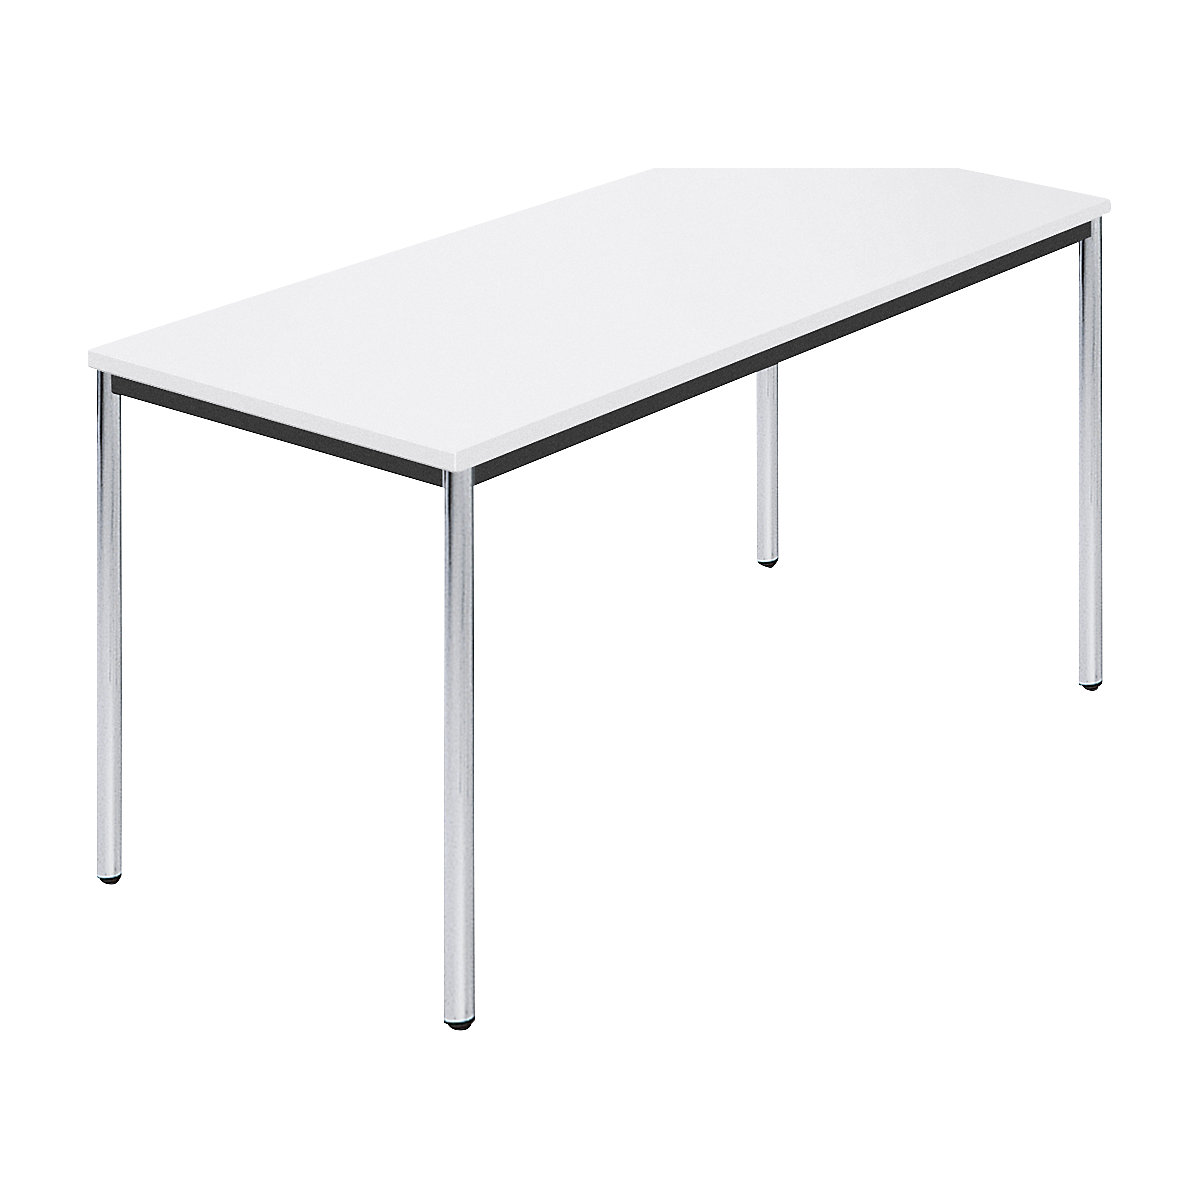 Rechthoekige tafel, met ronde, verchroomde tafelpoten, b x d = 1400 x 700 mm, wit-6